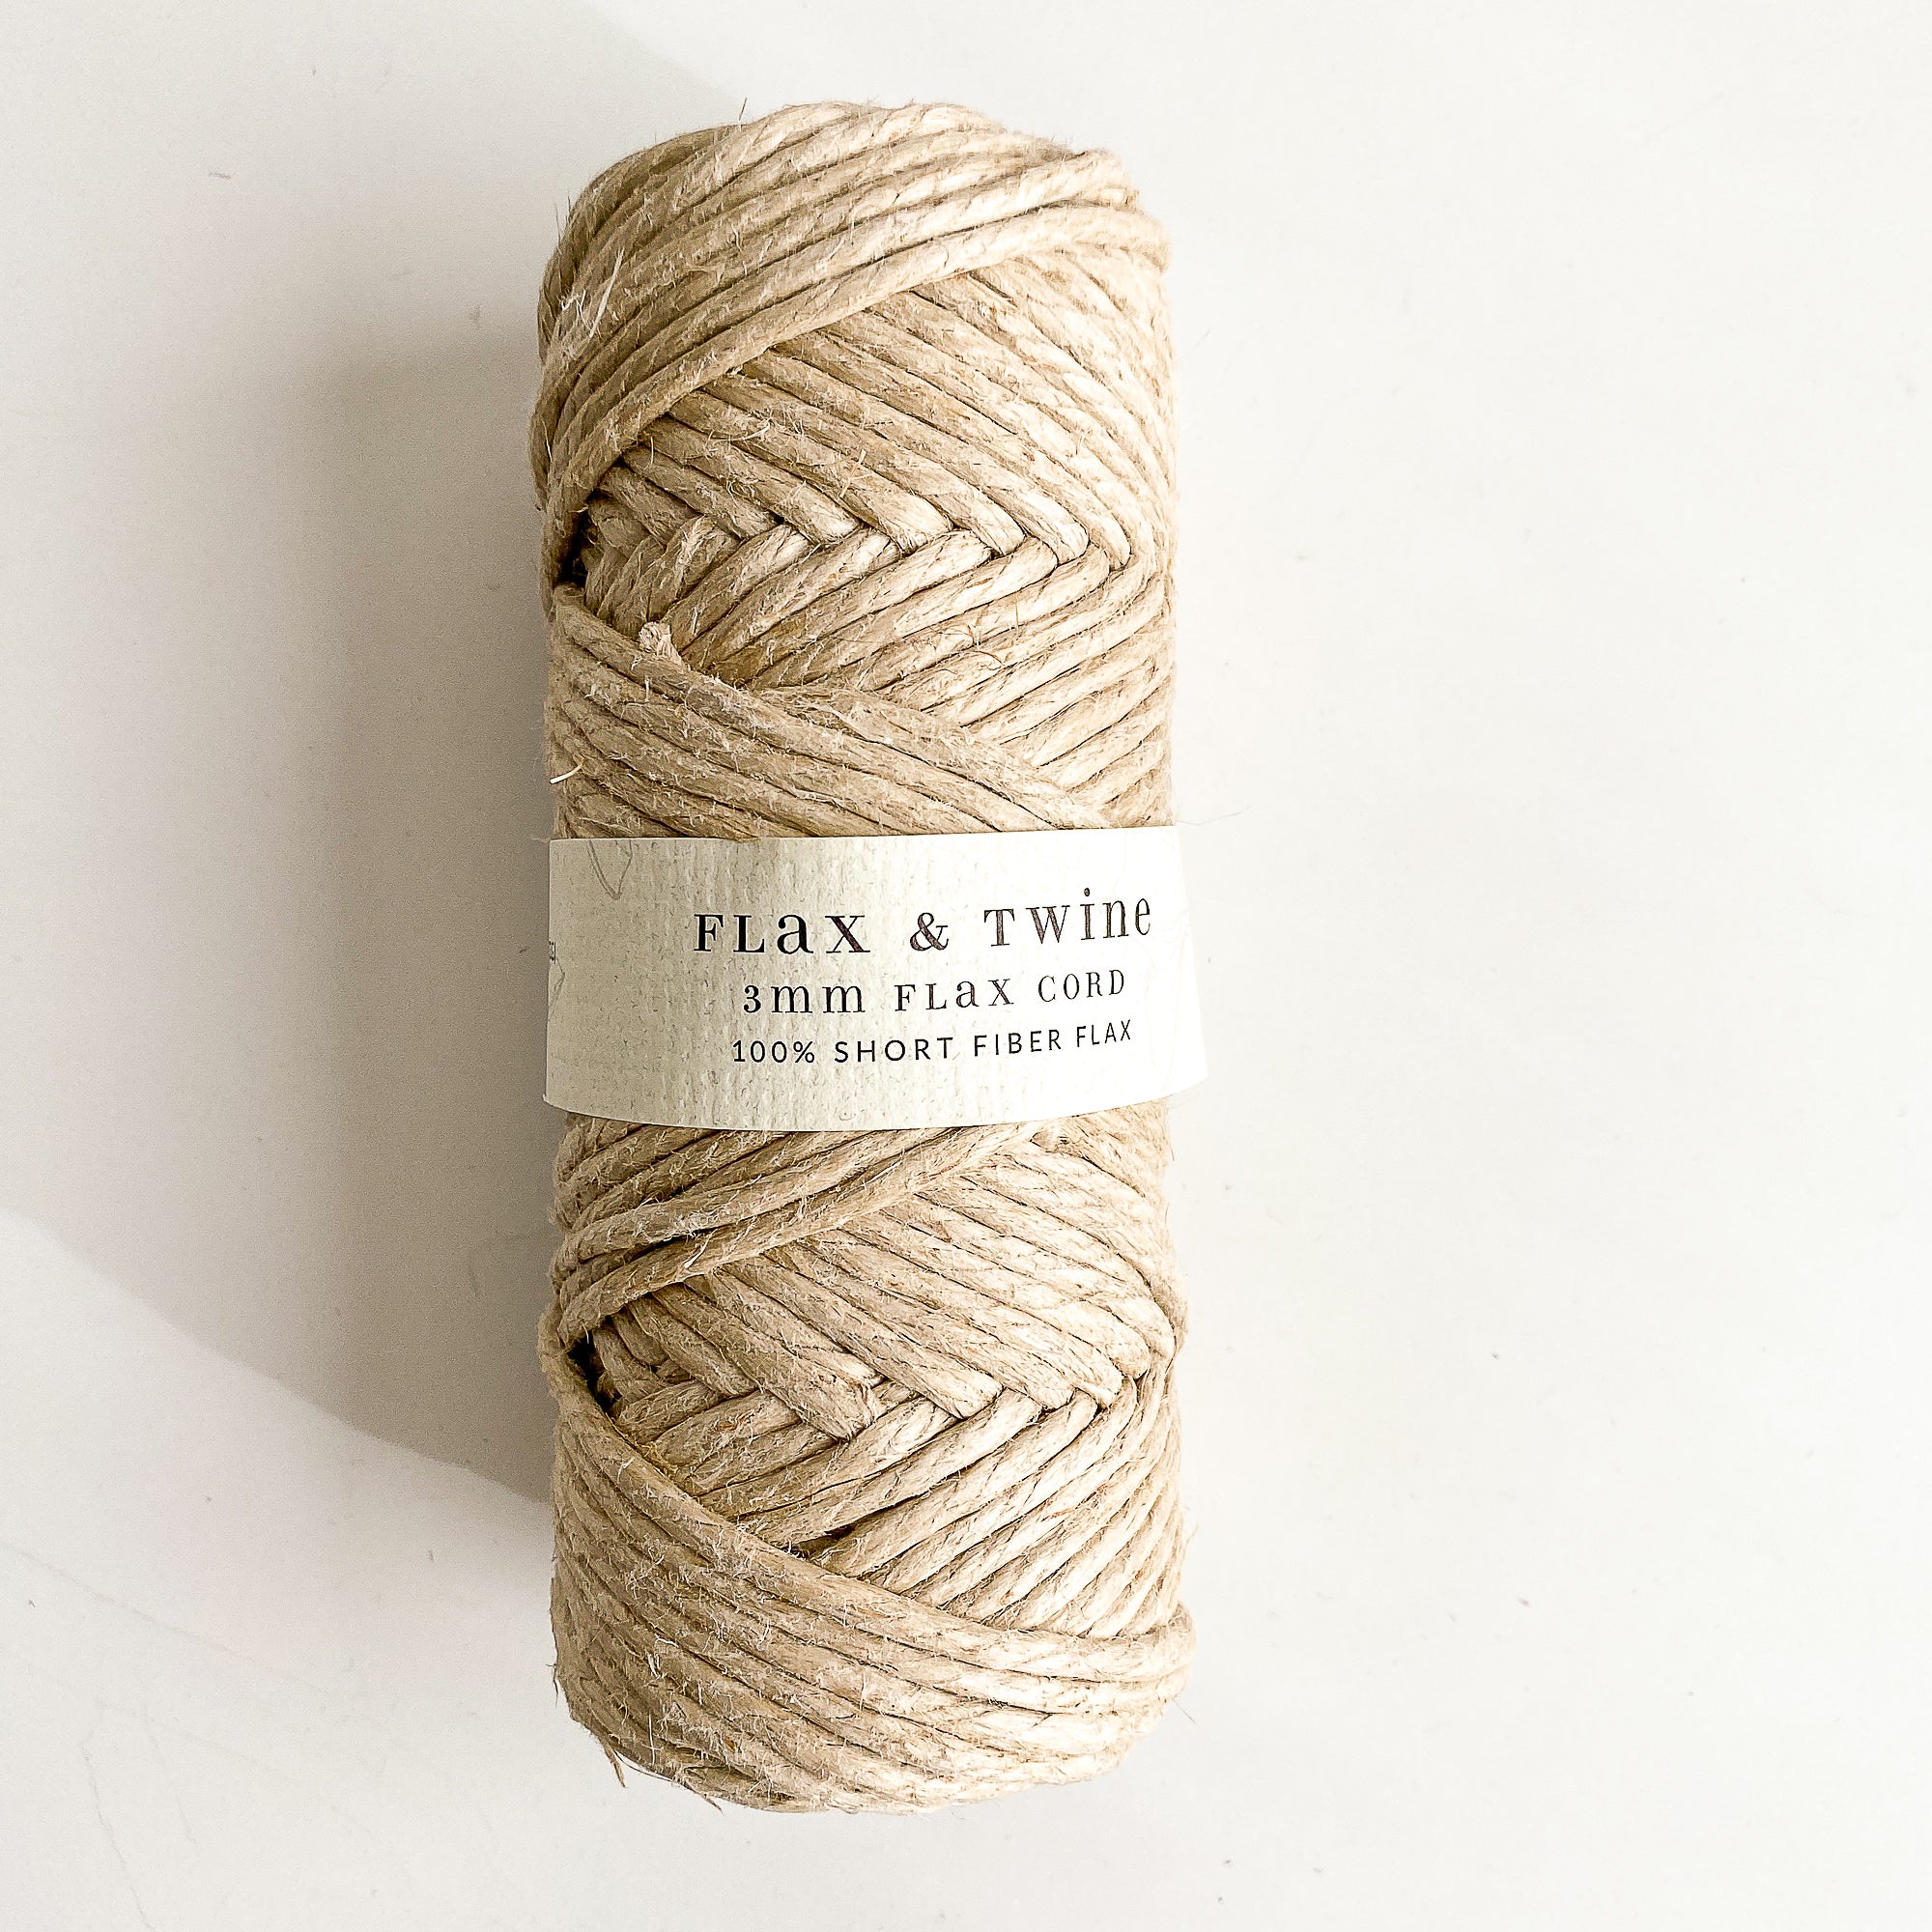 Flax & Twine 3mm Flax Cord